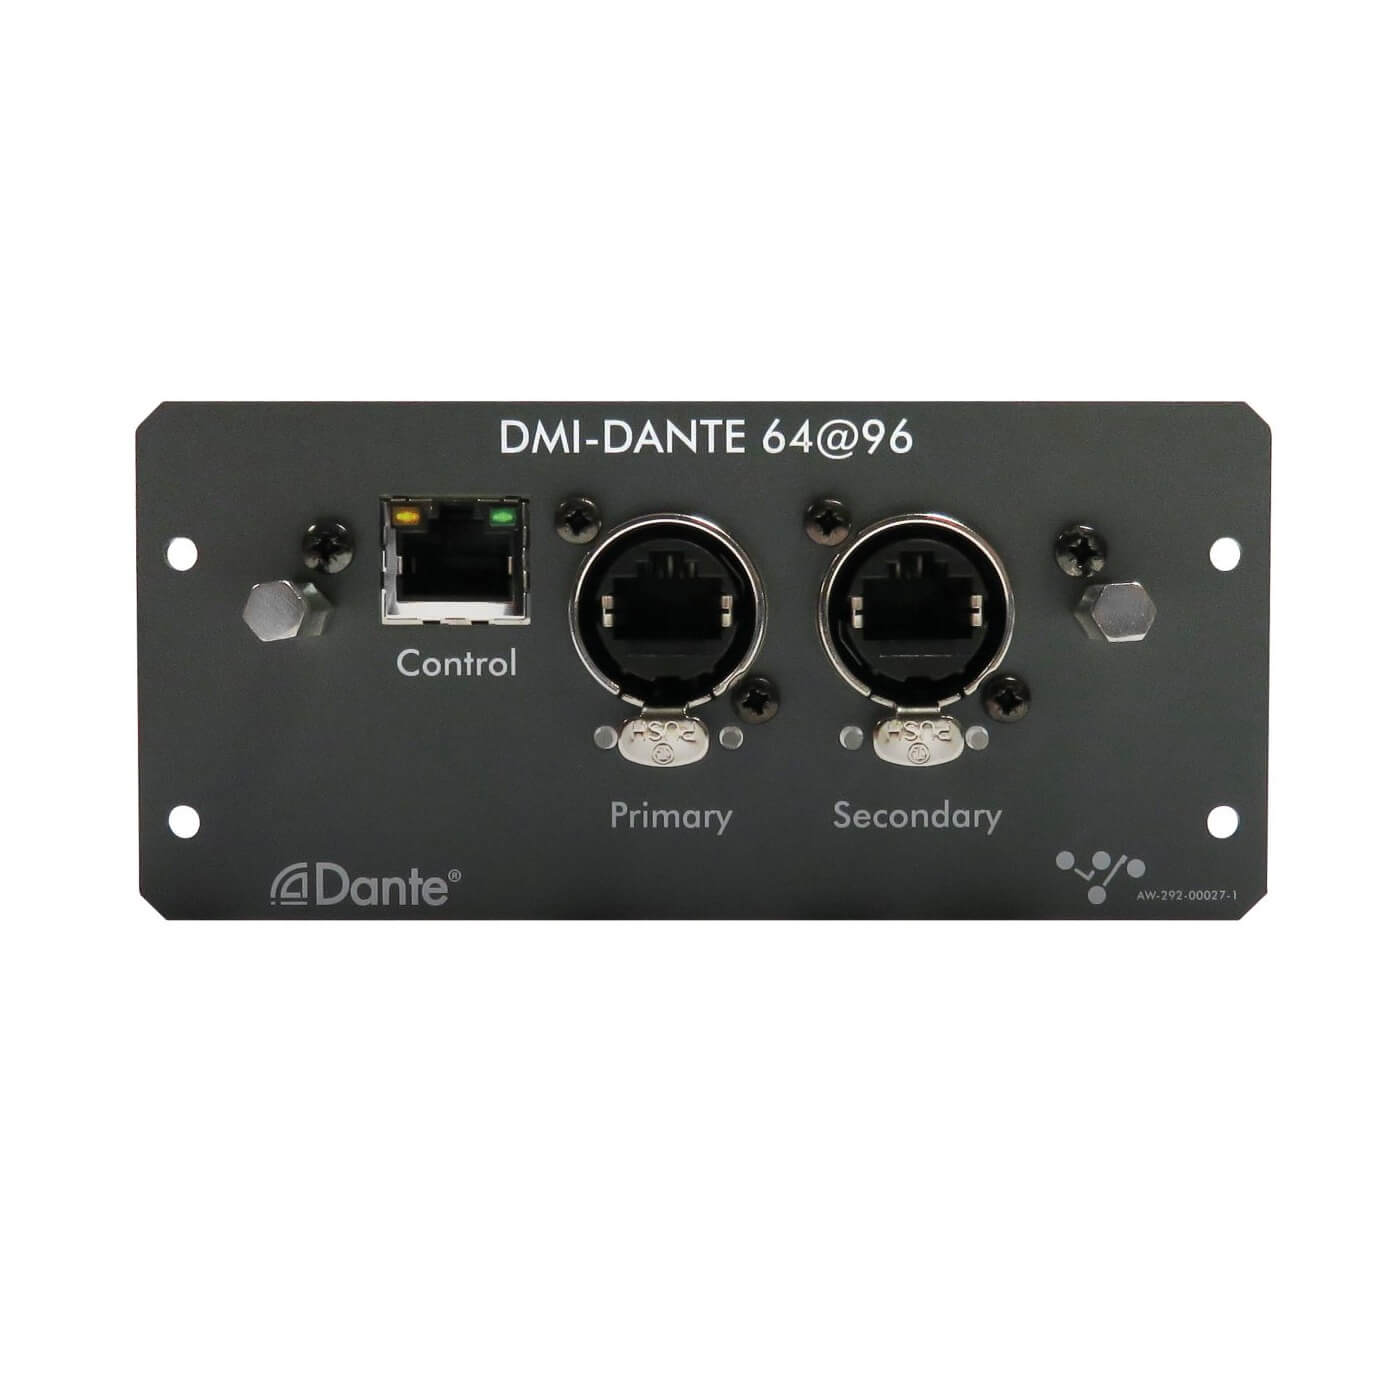 DiGiCo DMI-DANTE 64@96 Multi-channel Interface card